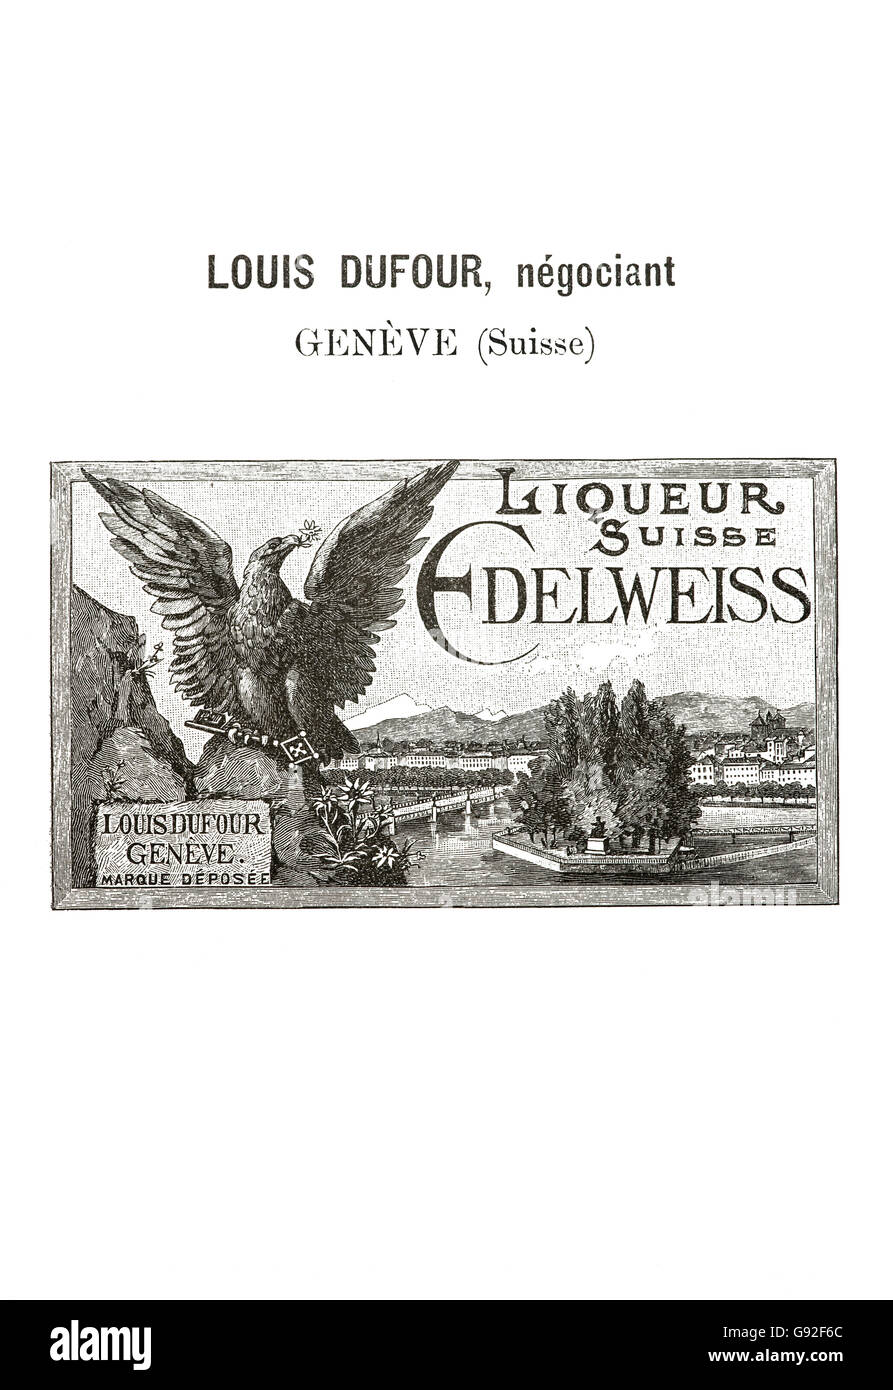 Historische Markenzeichen für Schweizer Edelweiss Likör vermarktet vom Genfer Händler Louis Dufour von 1894, Schweiz Stockfoto